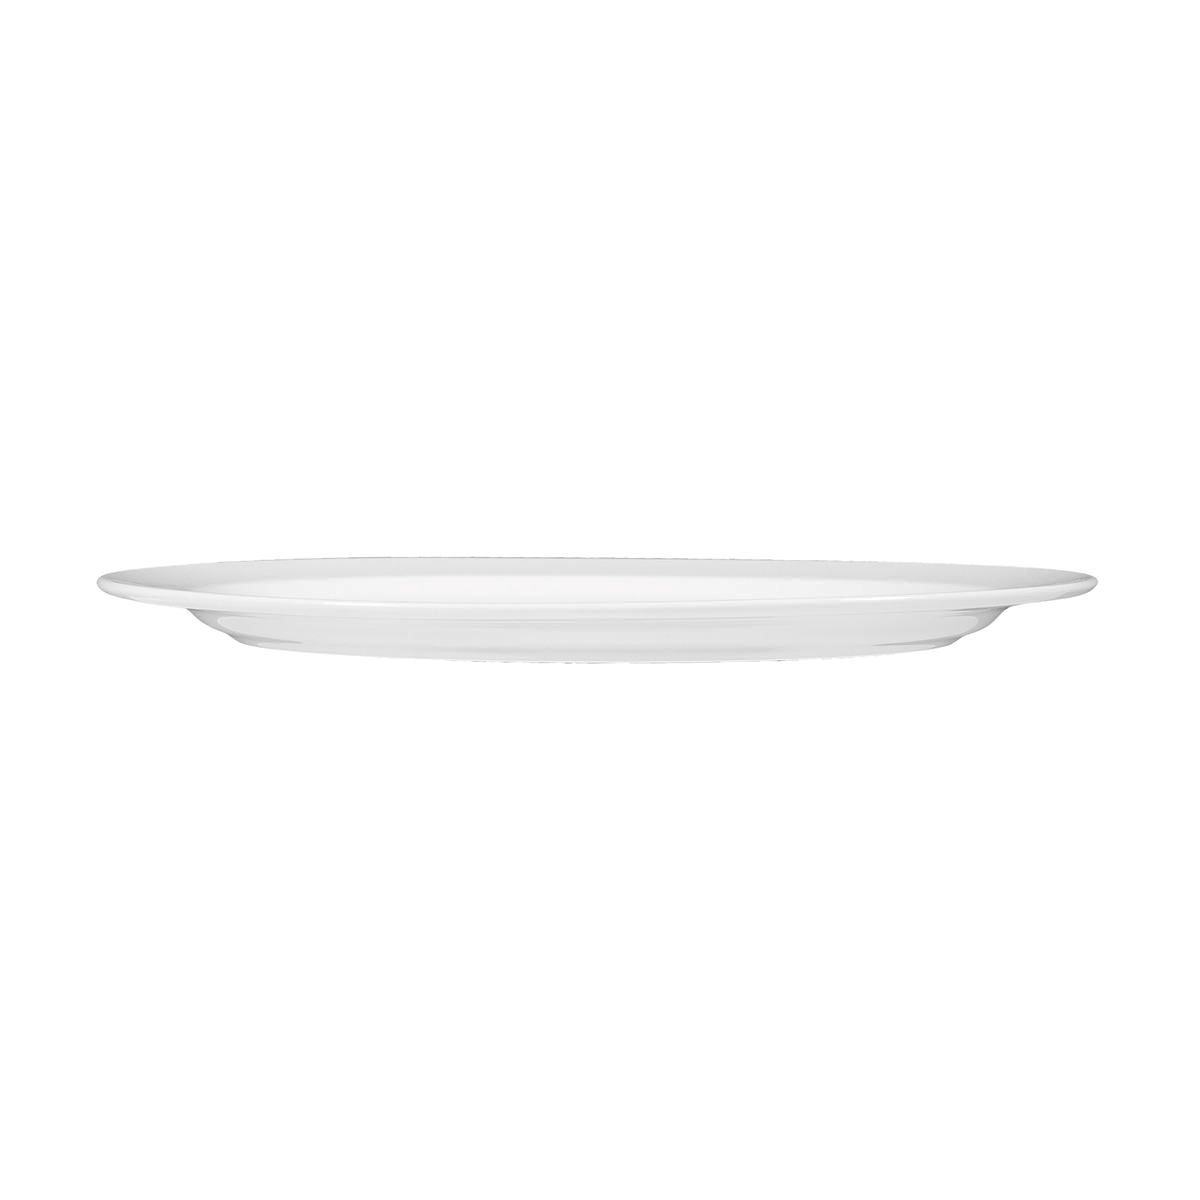 Platte oval 31 cm - Serie Meran